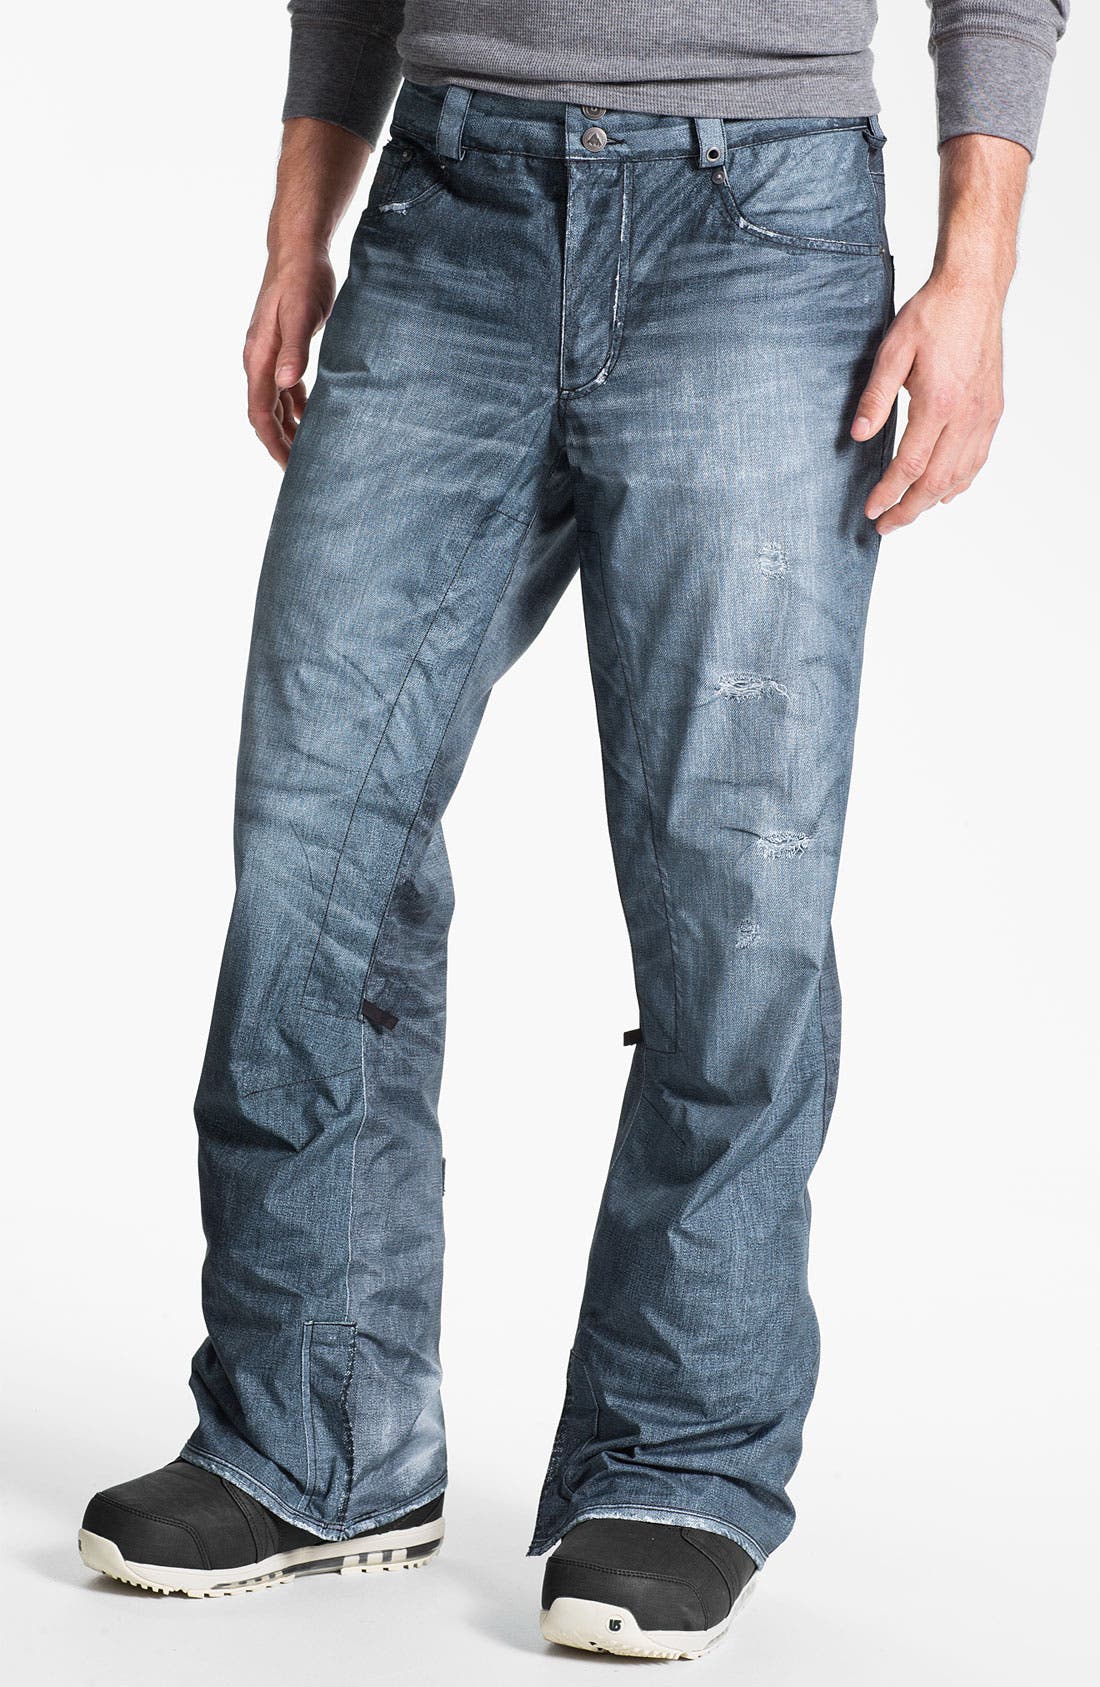 customize levis jeans